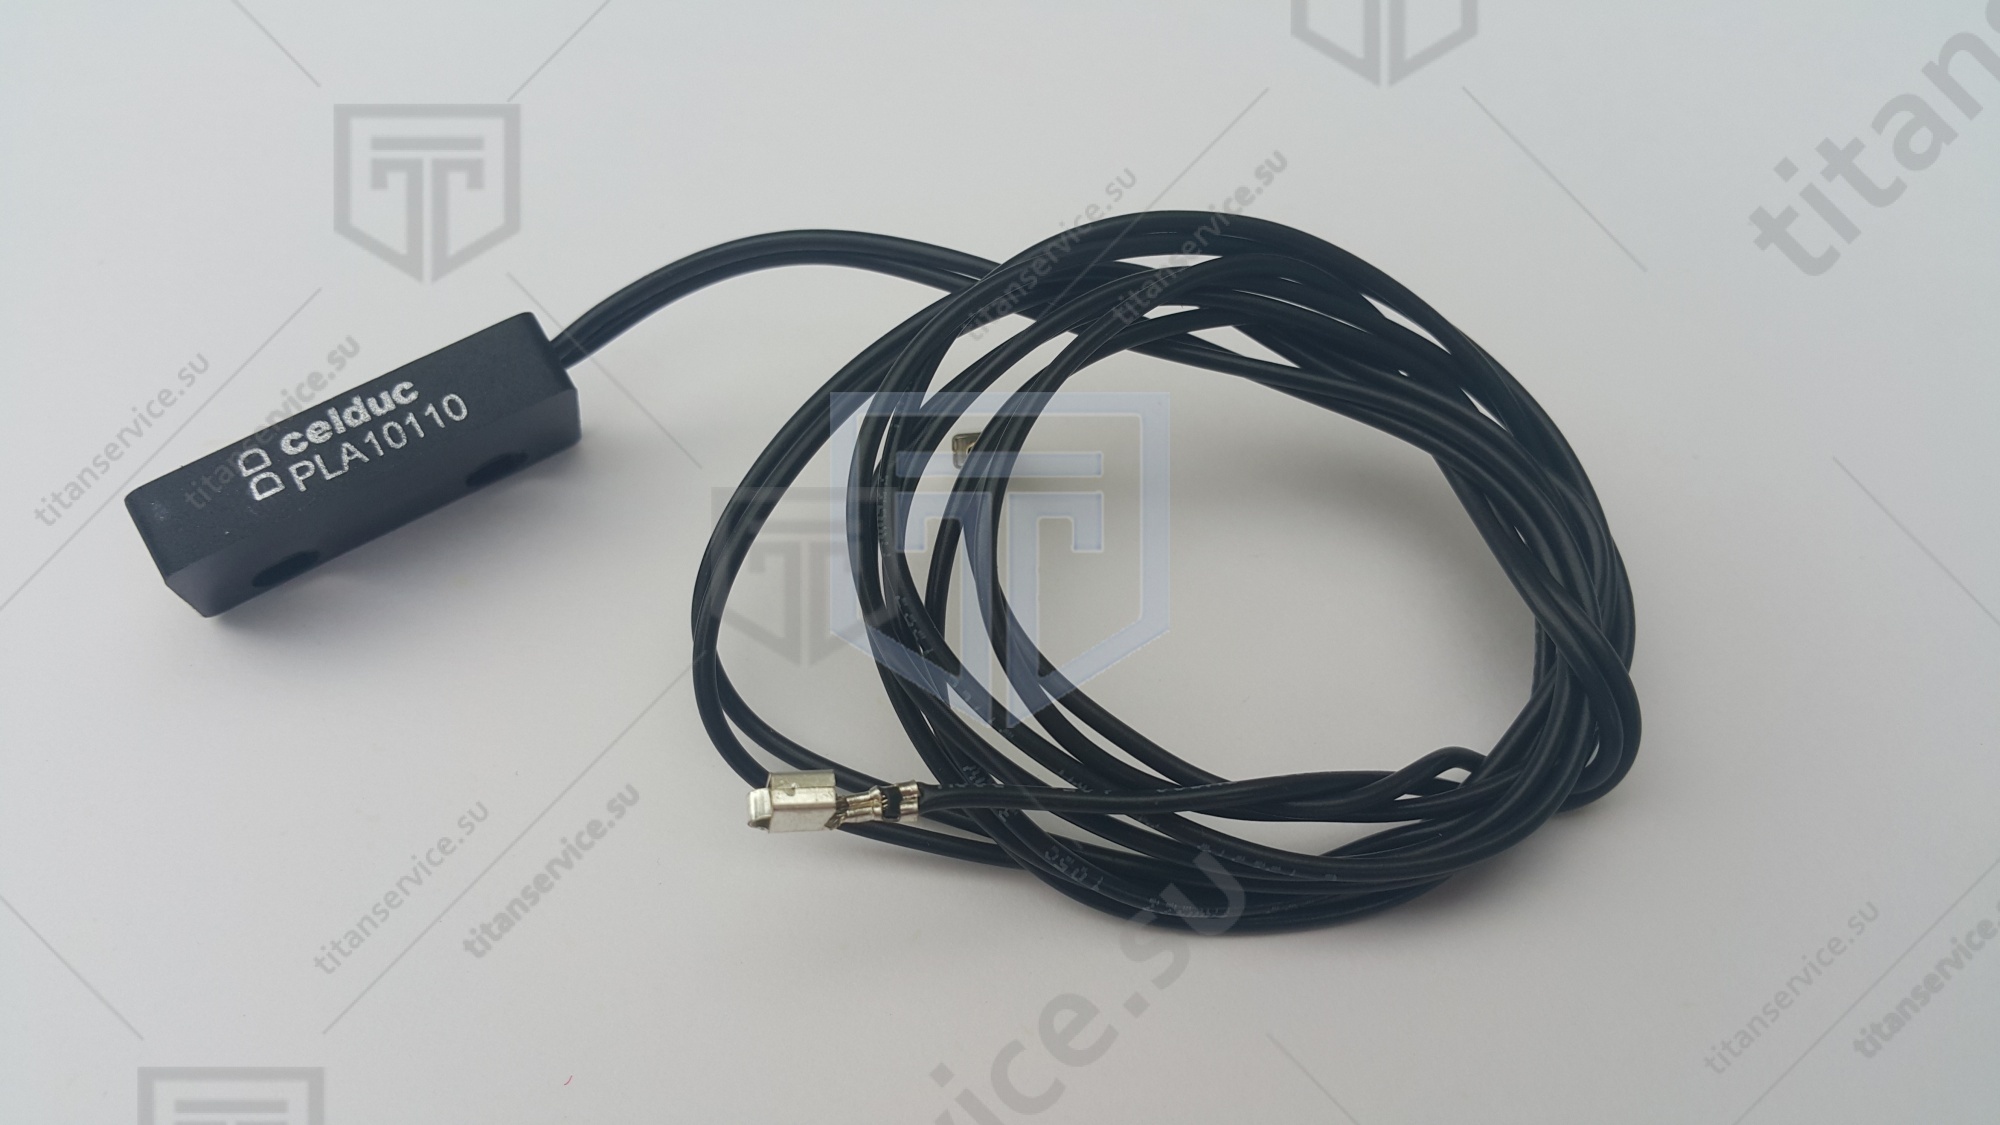 Датчик герконовый PLA10110 2 проводной длиной кабеля UL800 мм "Abat" Чувашторгтехника - фото №1